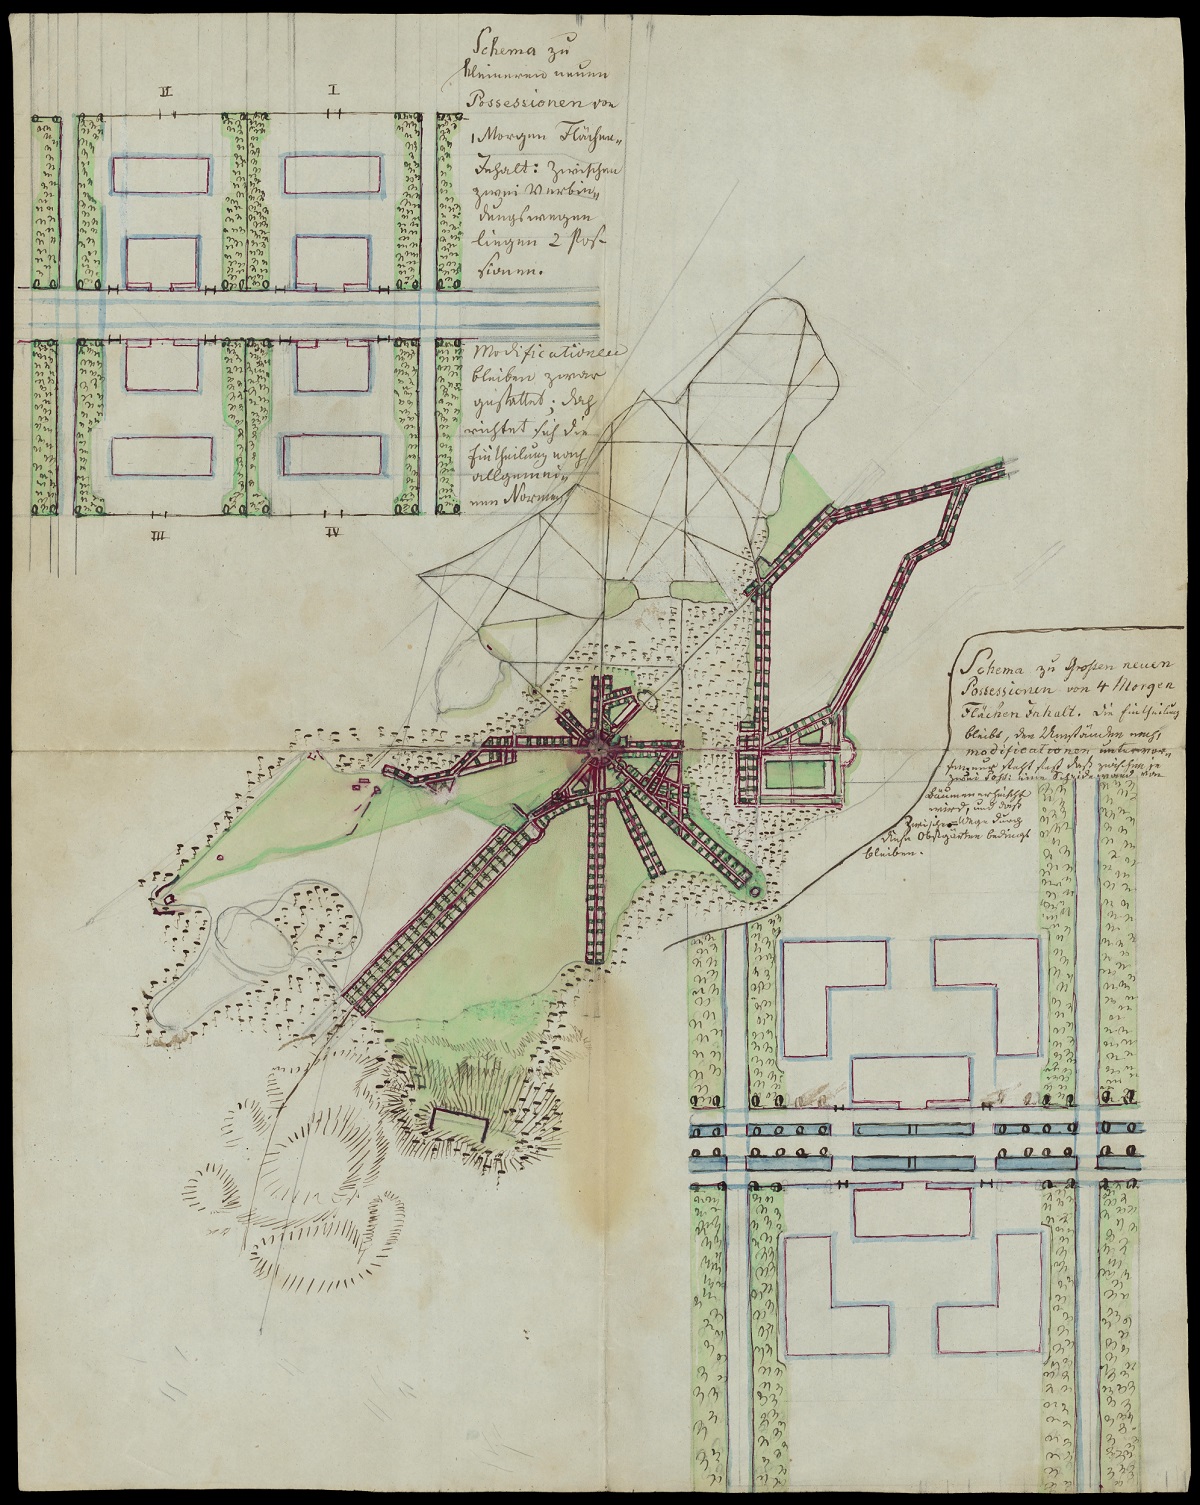 Carlsruhe, Geplante Straßenanlagen und Parzellierung der Grundstücke, die sich um Schloss und Hof gruppieren sollte, um 1834